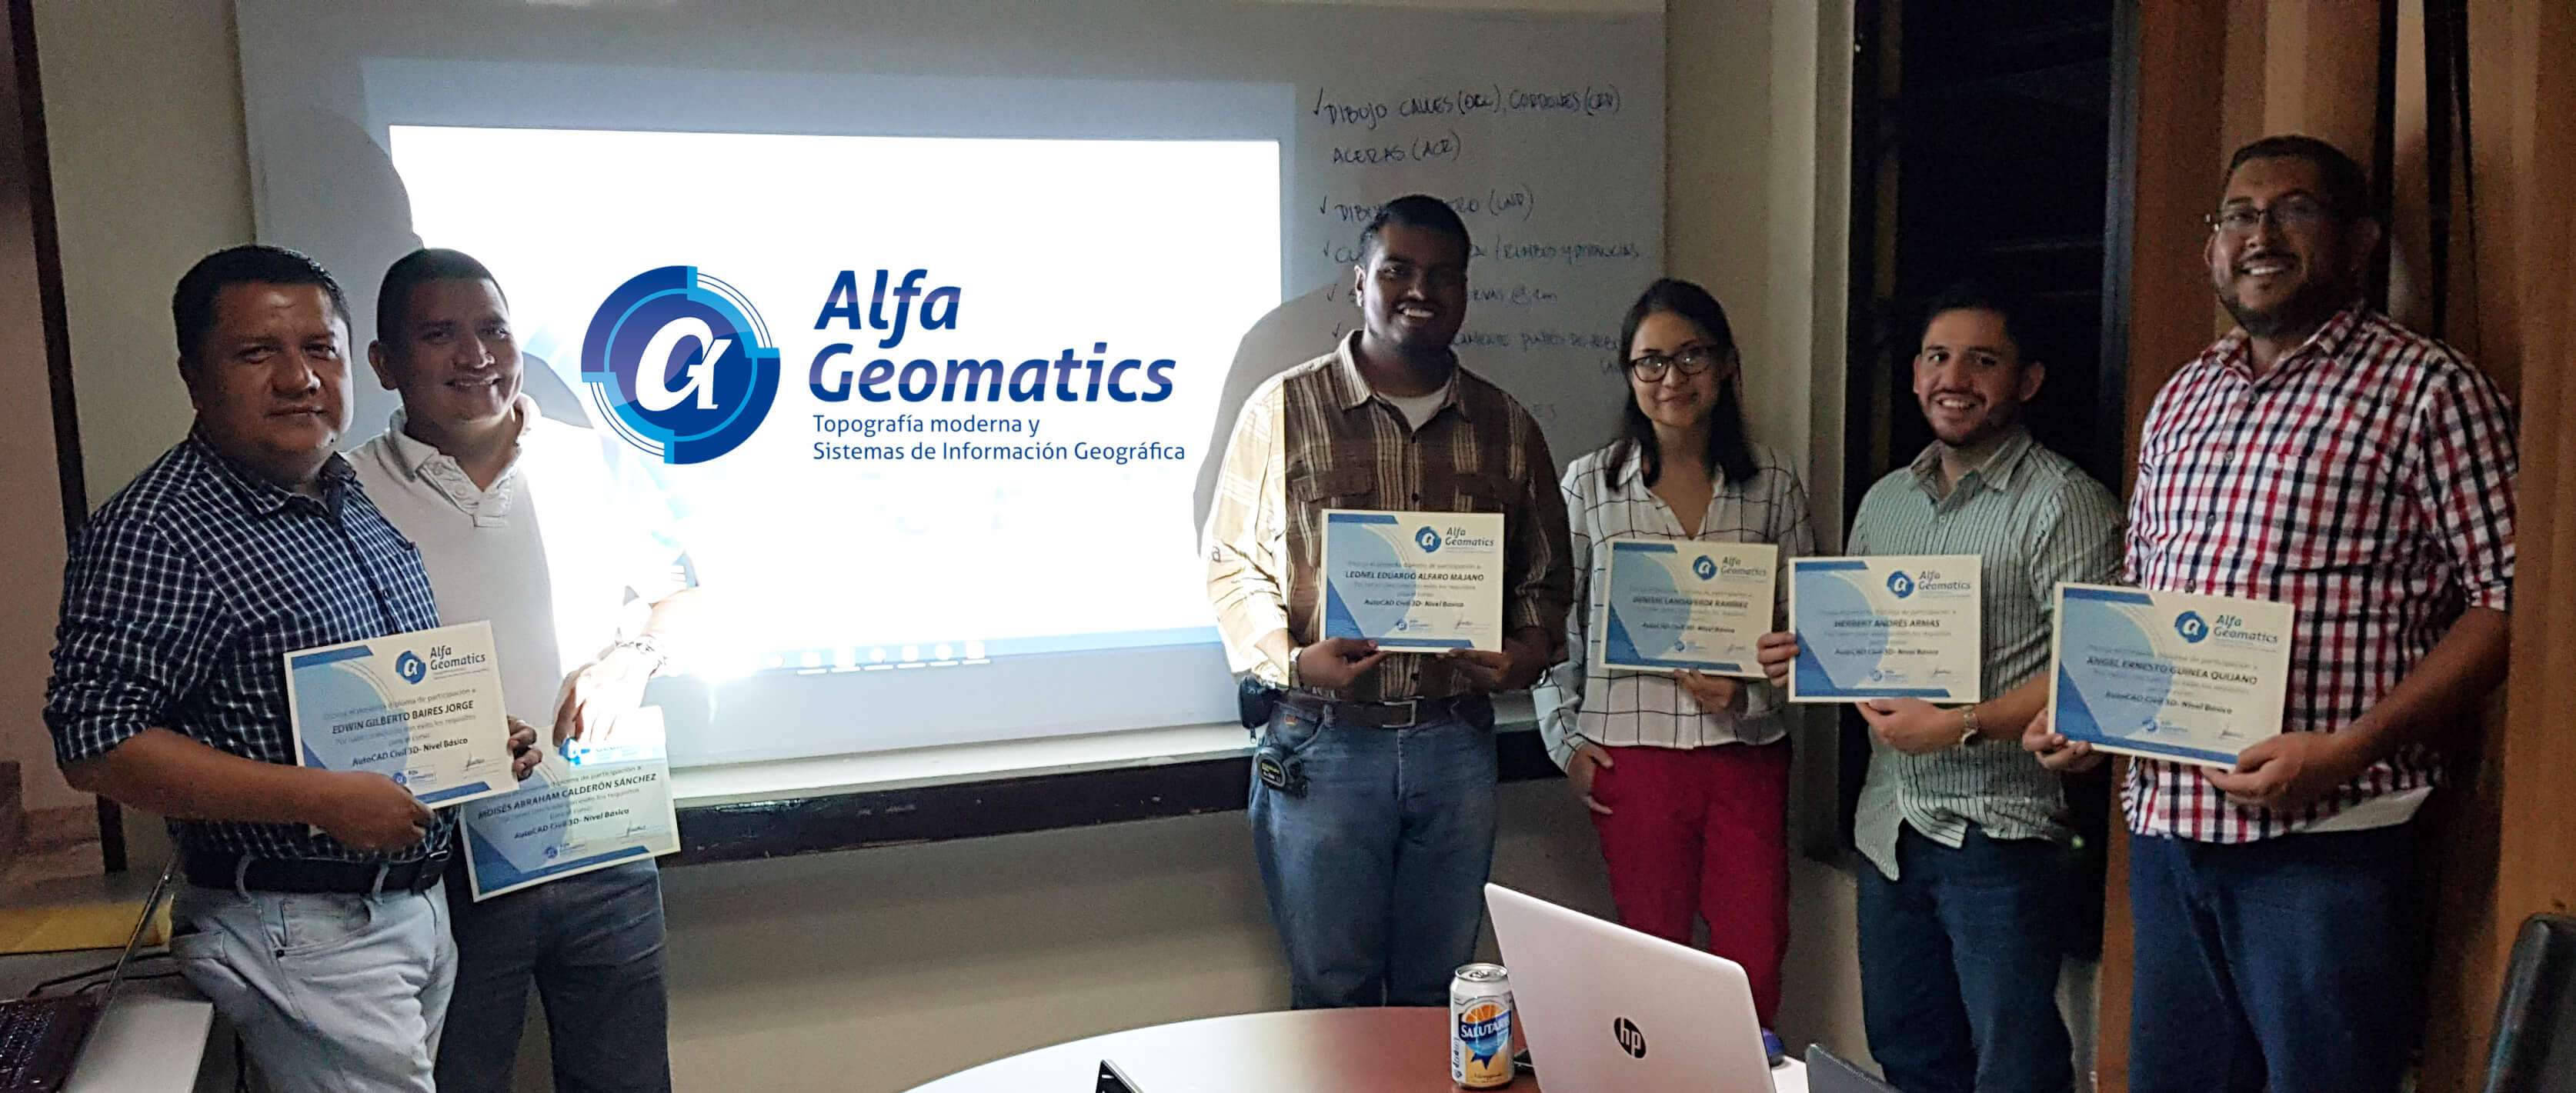 Graduación de estudiantes Alfa Geomatics